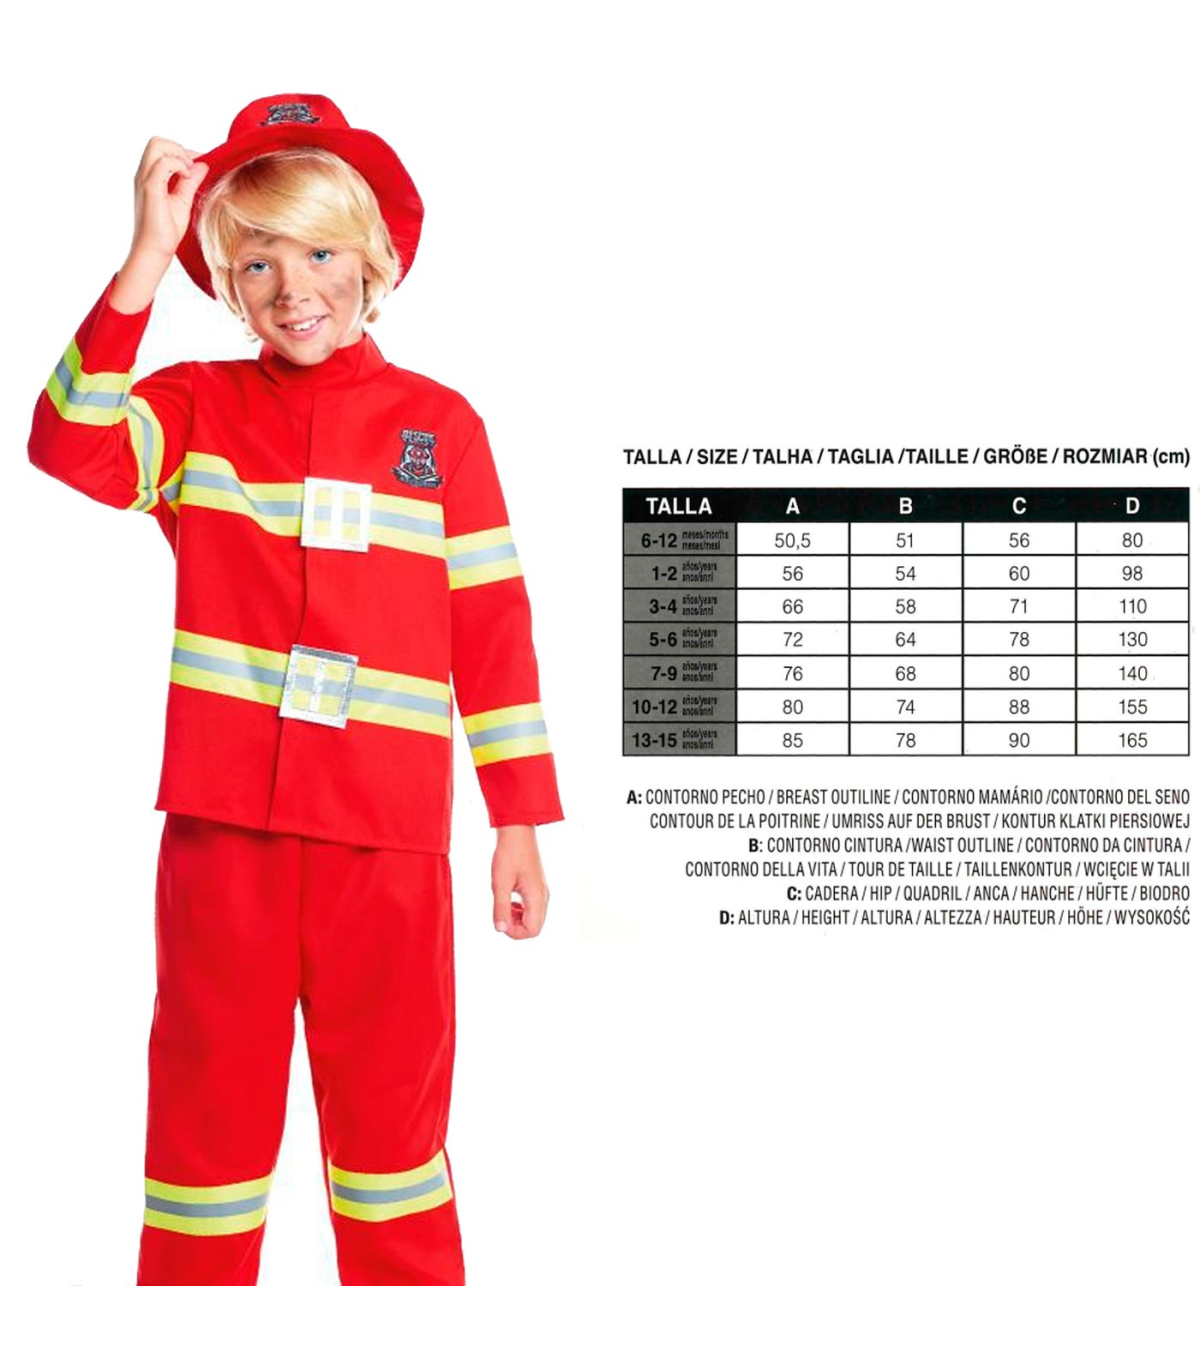 Tradineur - Disfraz de bombero para adulto, poliéster, incluye sombrero,  camiseta y pantalón, atuendo de carnaval, Halloween, co